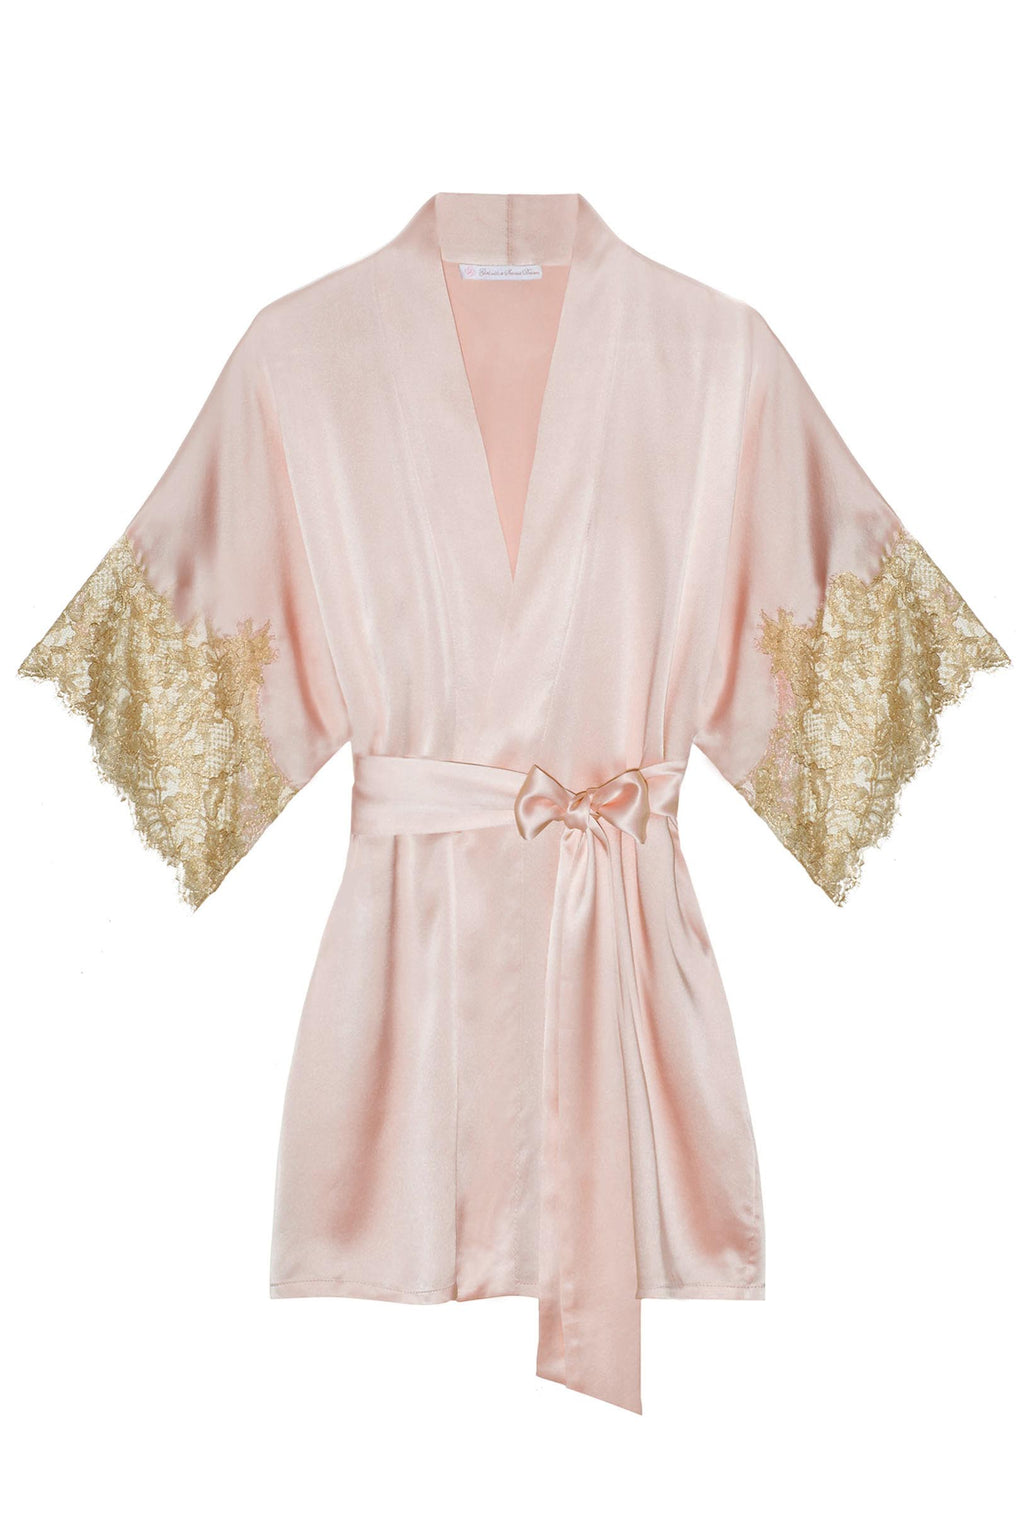 Tara Gilded Silk Kimono robe in Blush pink + gold lace ...